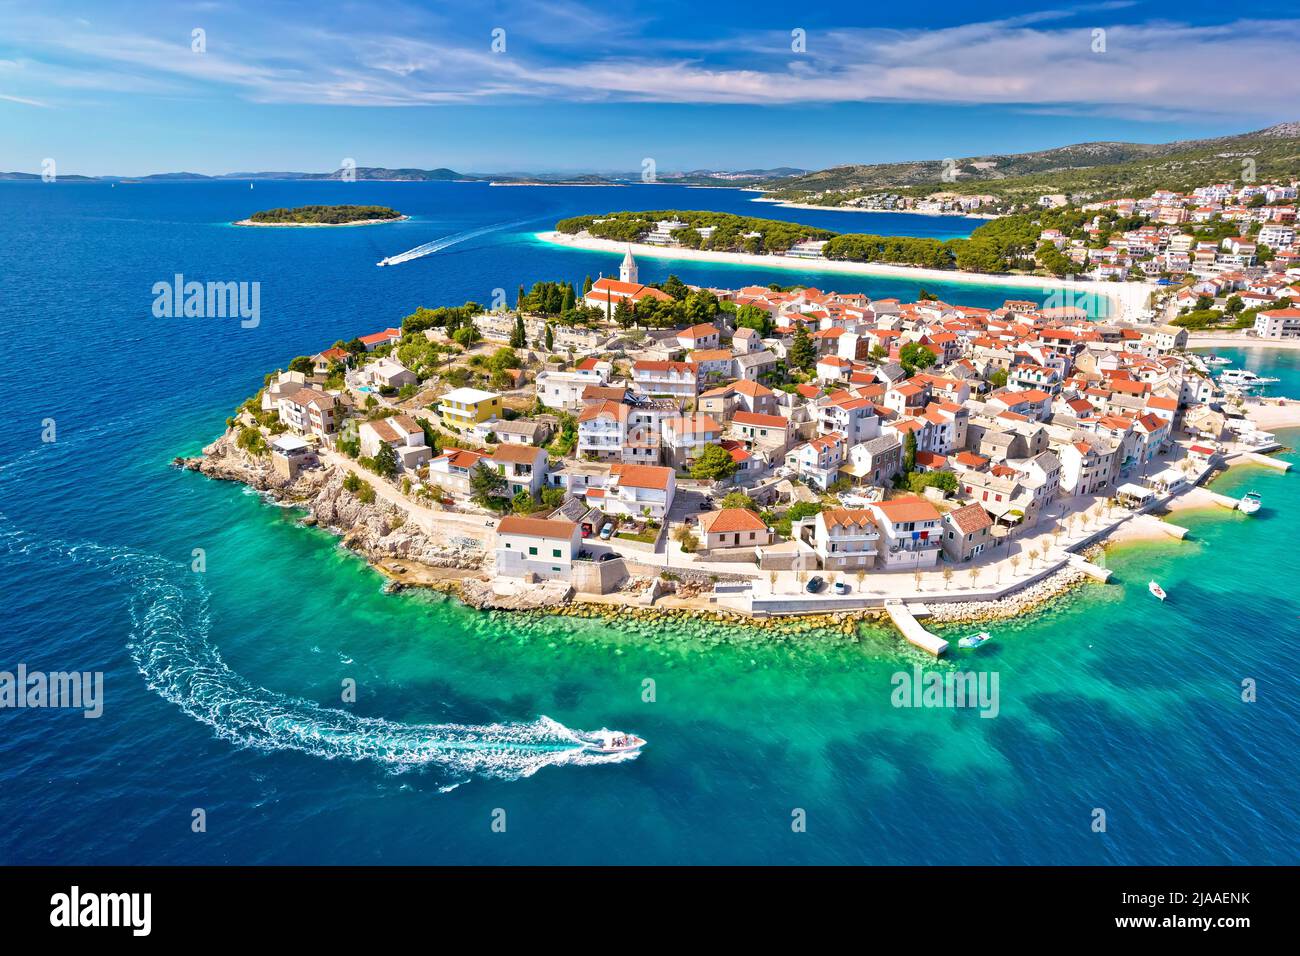 Adriatic tourist town of Primosten aerial panoramic archipelago view, Adriatic sea, Dalmatia region of Croatia Stock Photo